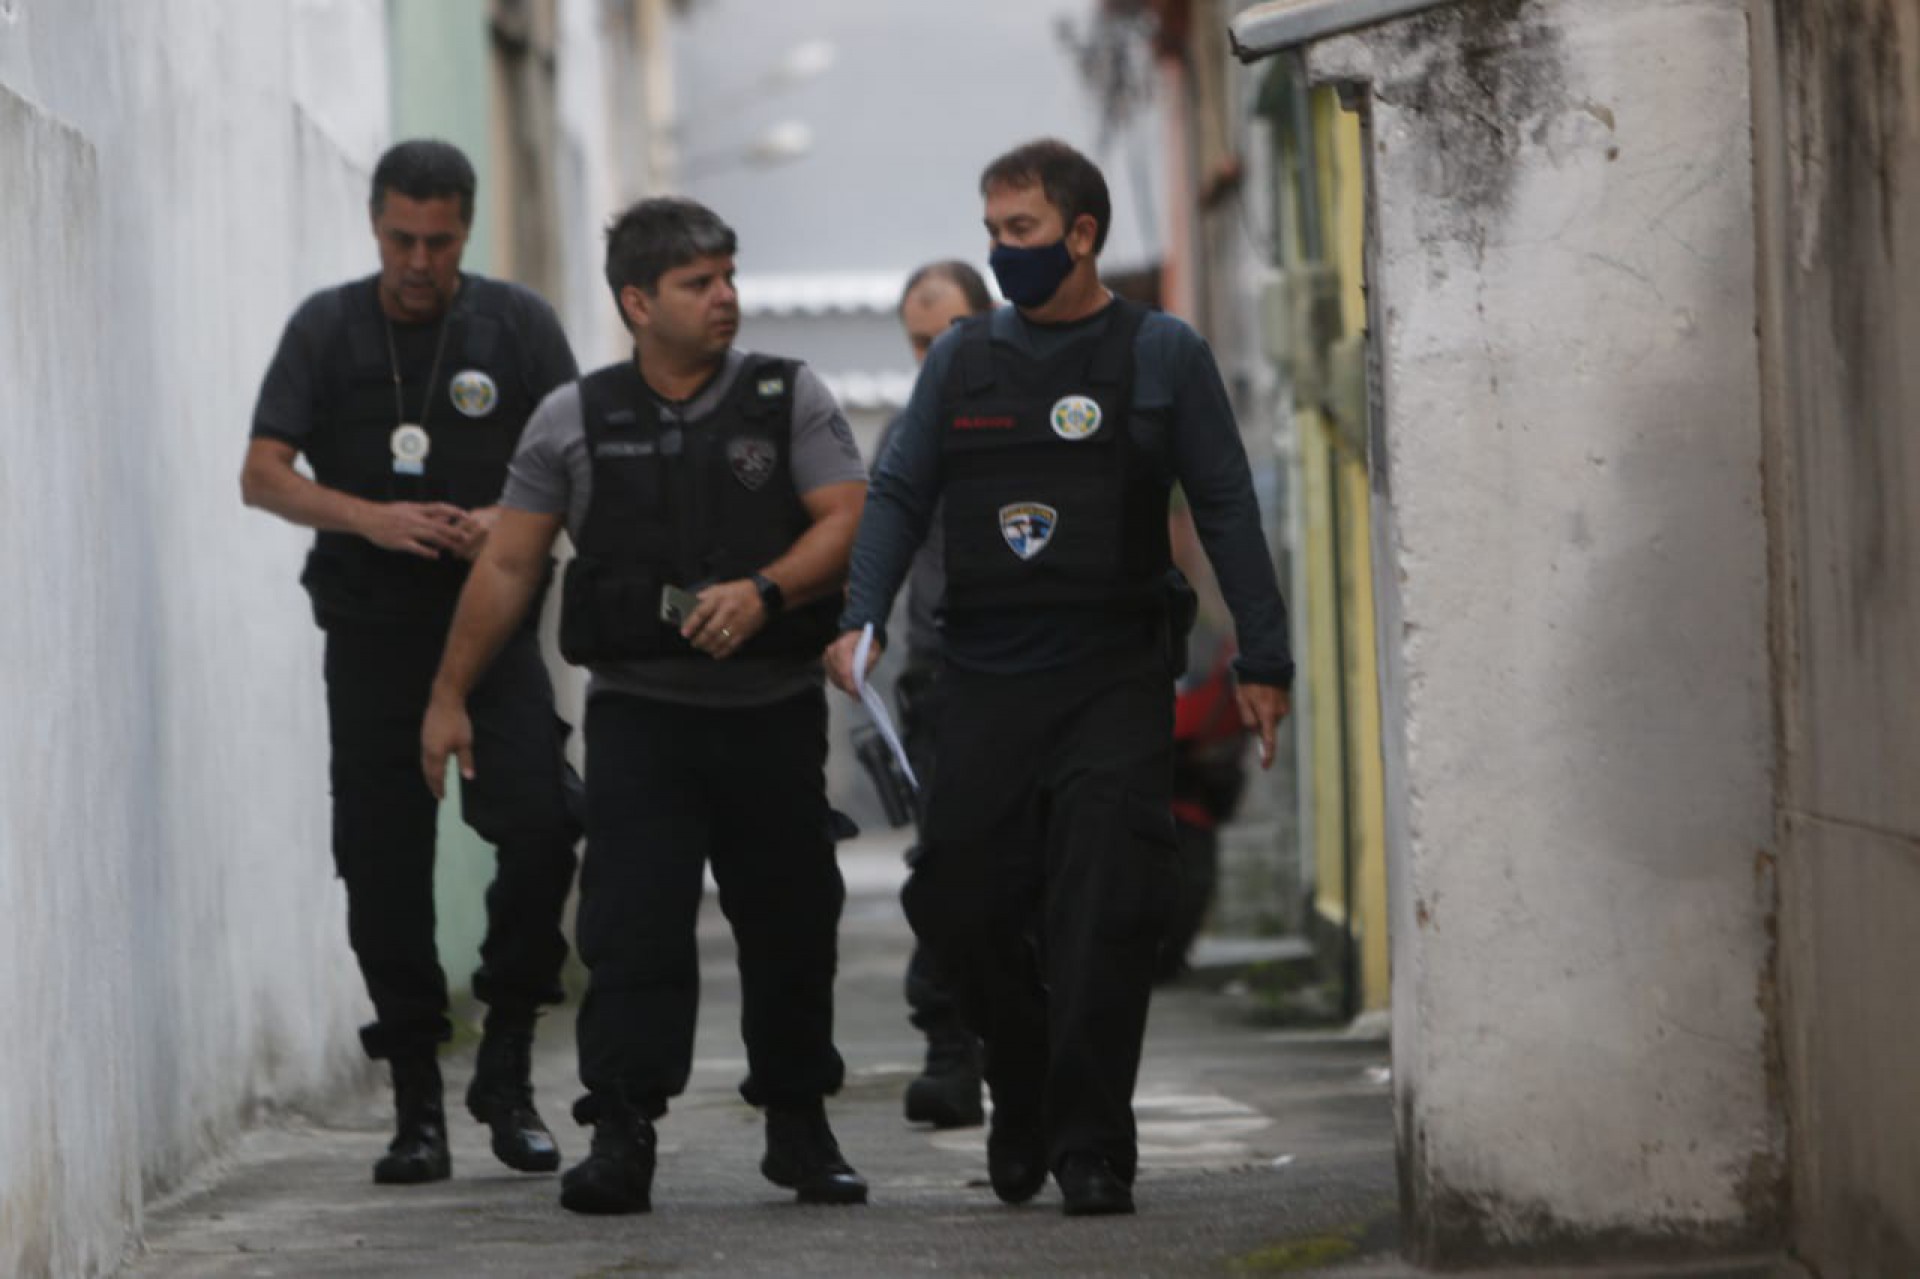 Policias cumprem mandando em endereço no Engenho de Dentro, Zona Norte do Rio - Reginaldo Pimenta/ Agência O DIA